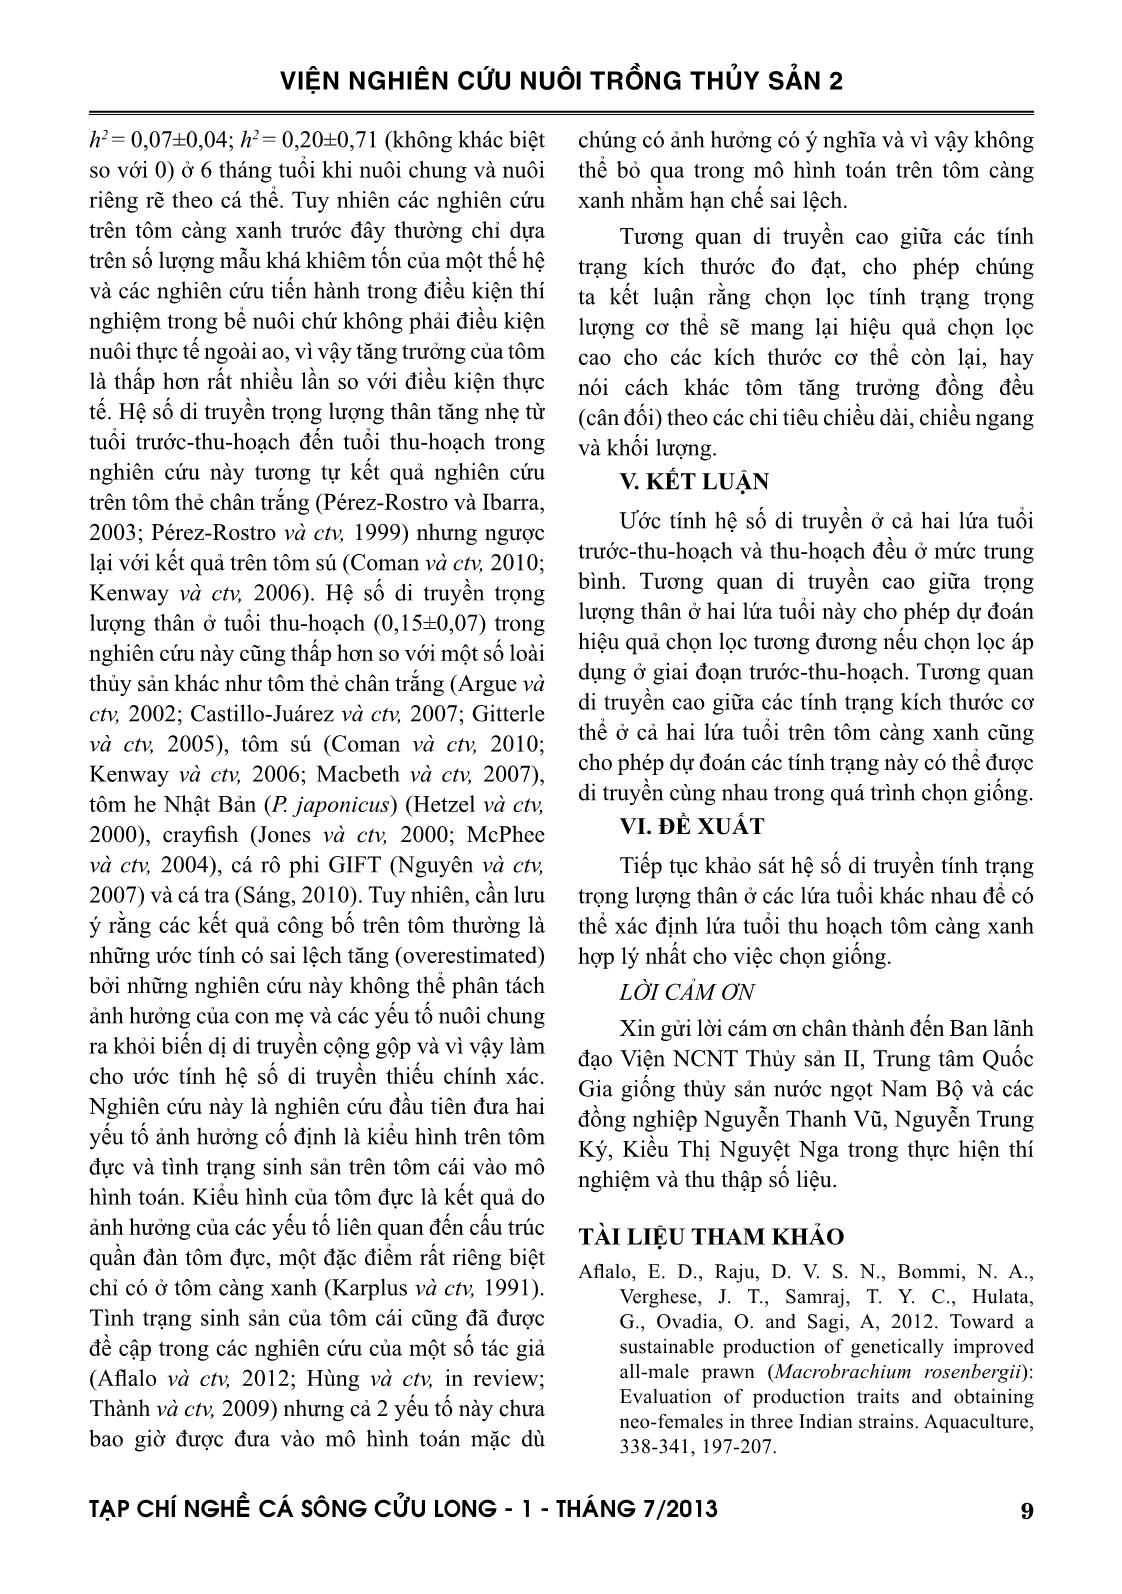 Tạp chí Nghề cá sông Cửu Long - Số 01/2013 trang 9